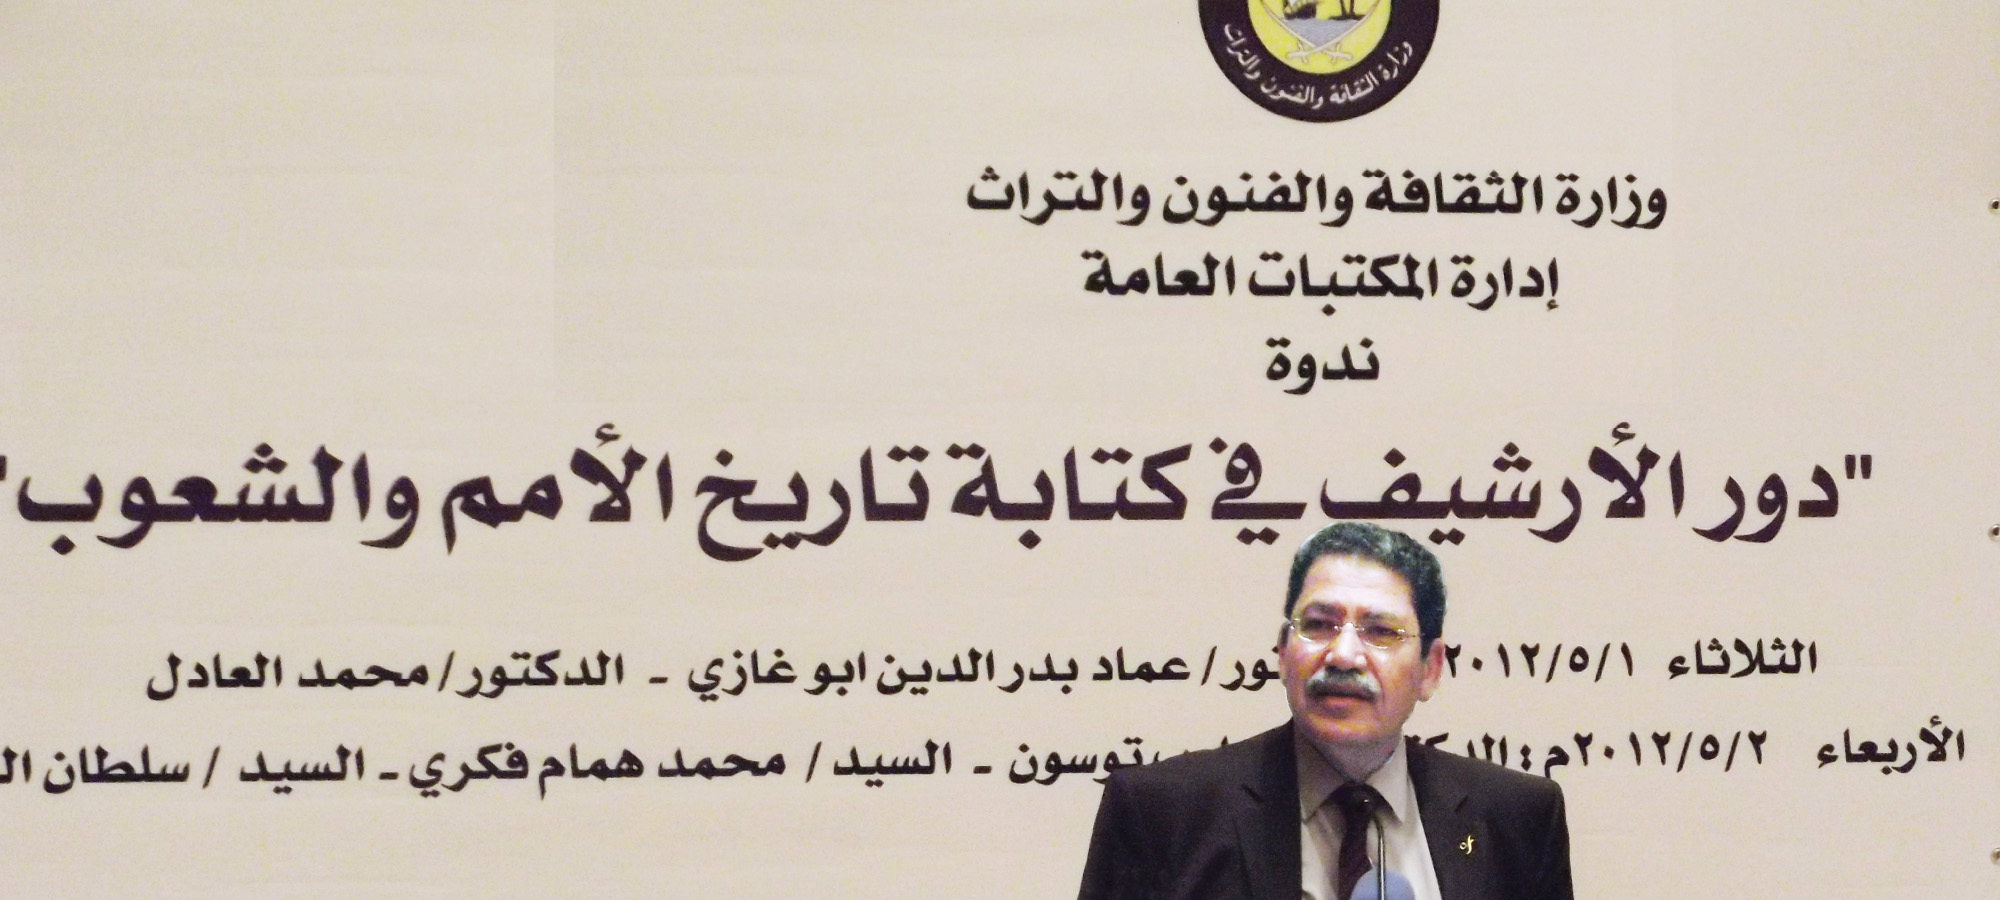 جهود مركز حسن بن محمد في مجال توثيق تاريخ قطر (مايو 2012)